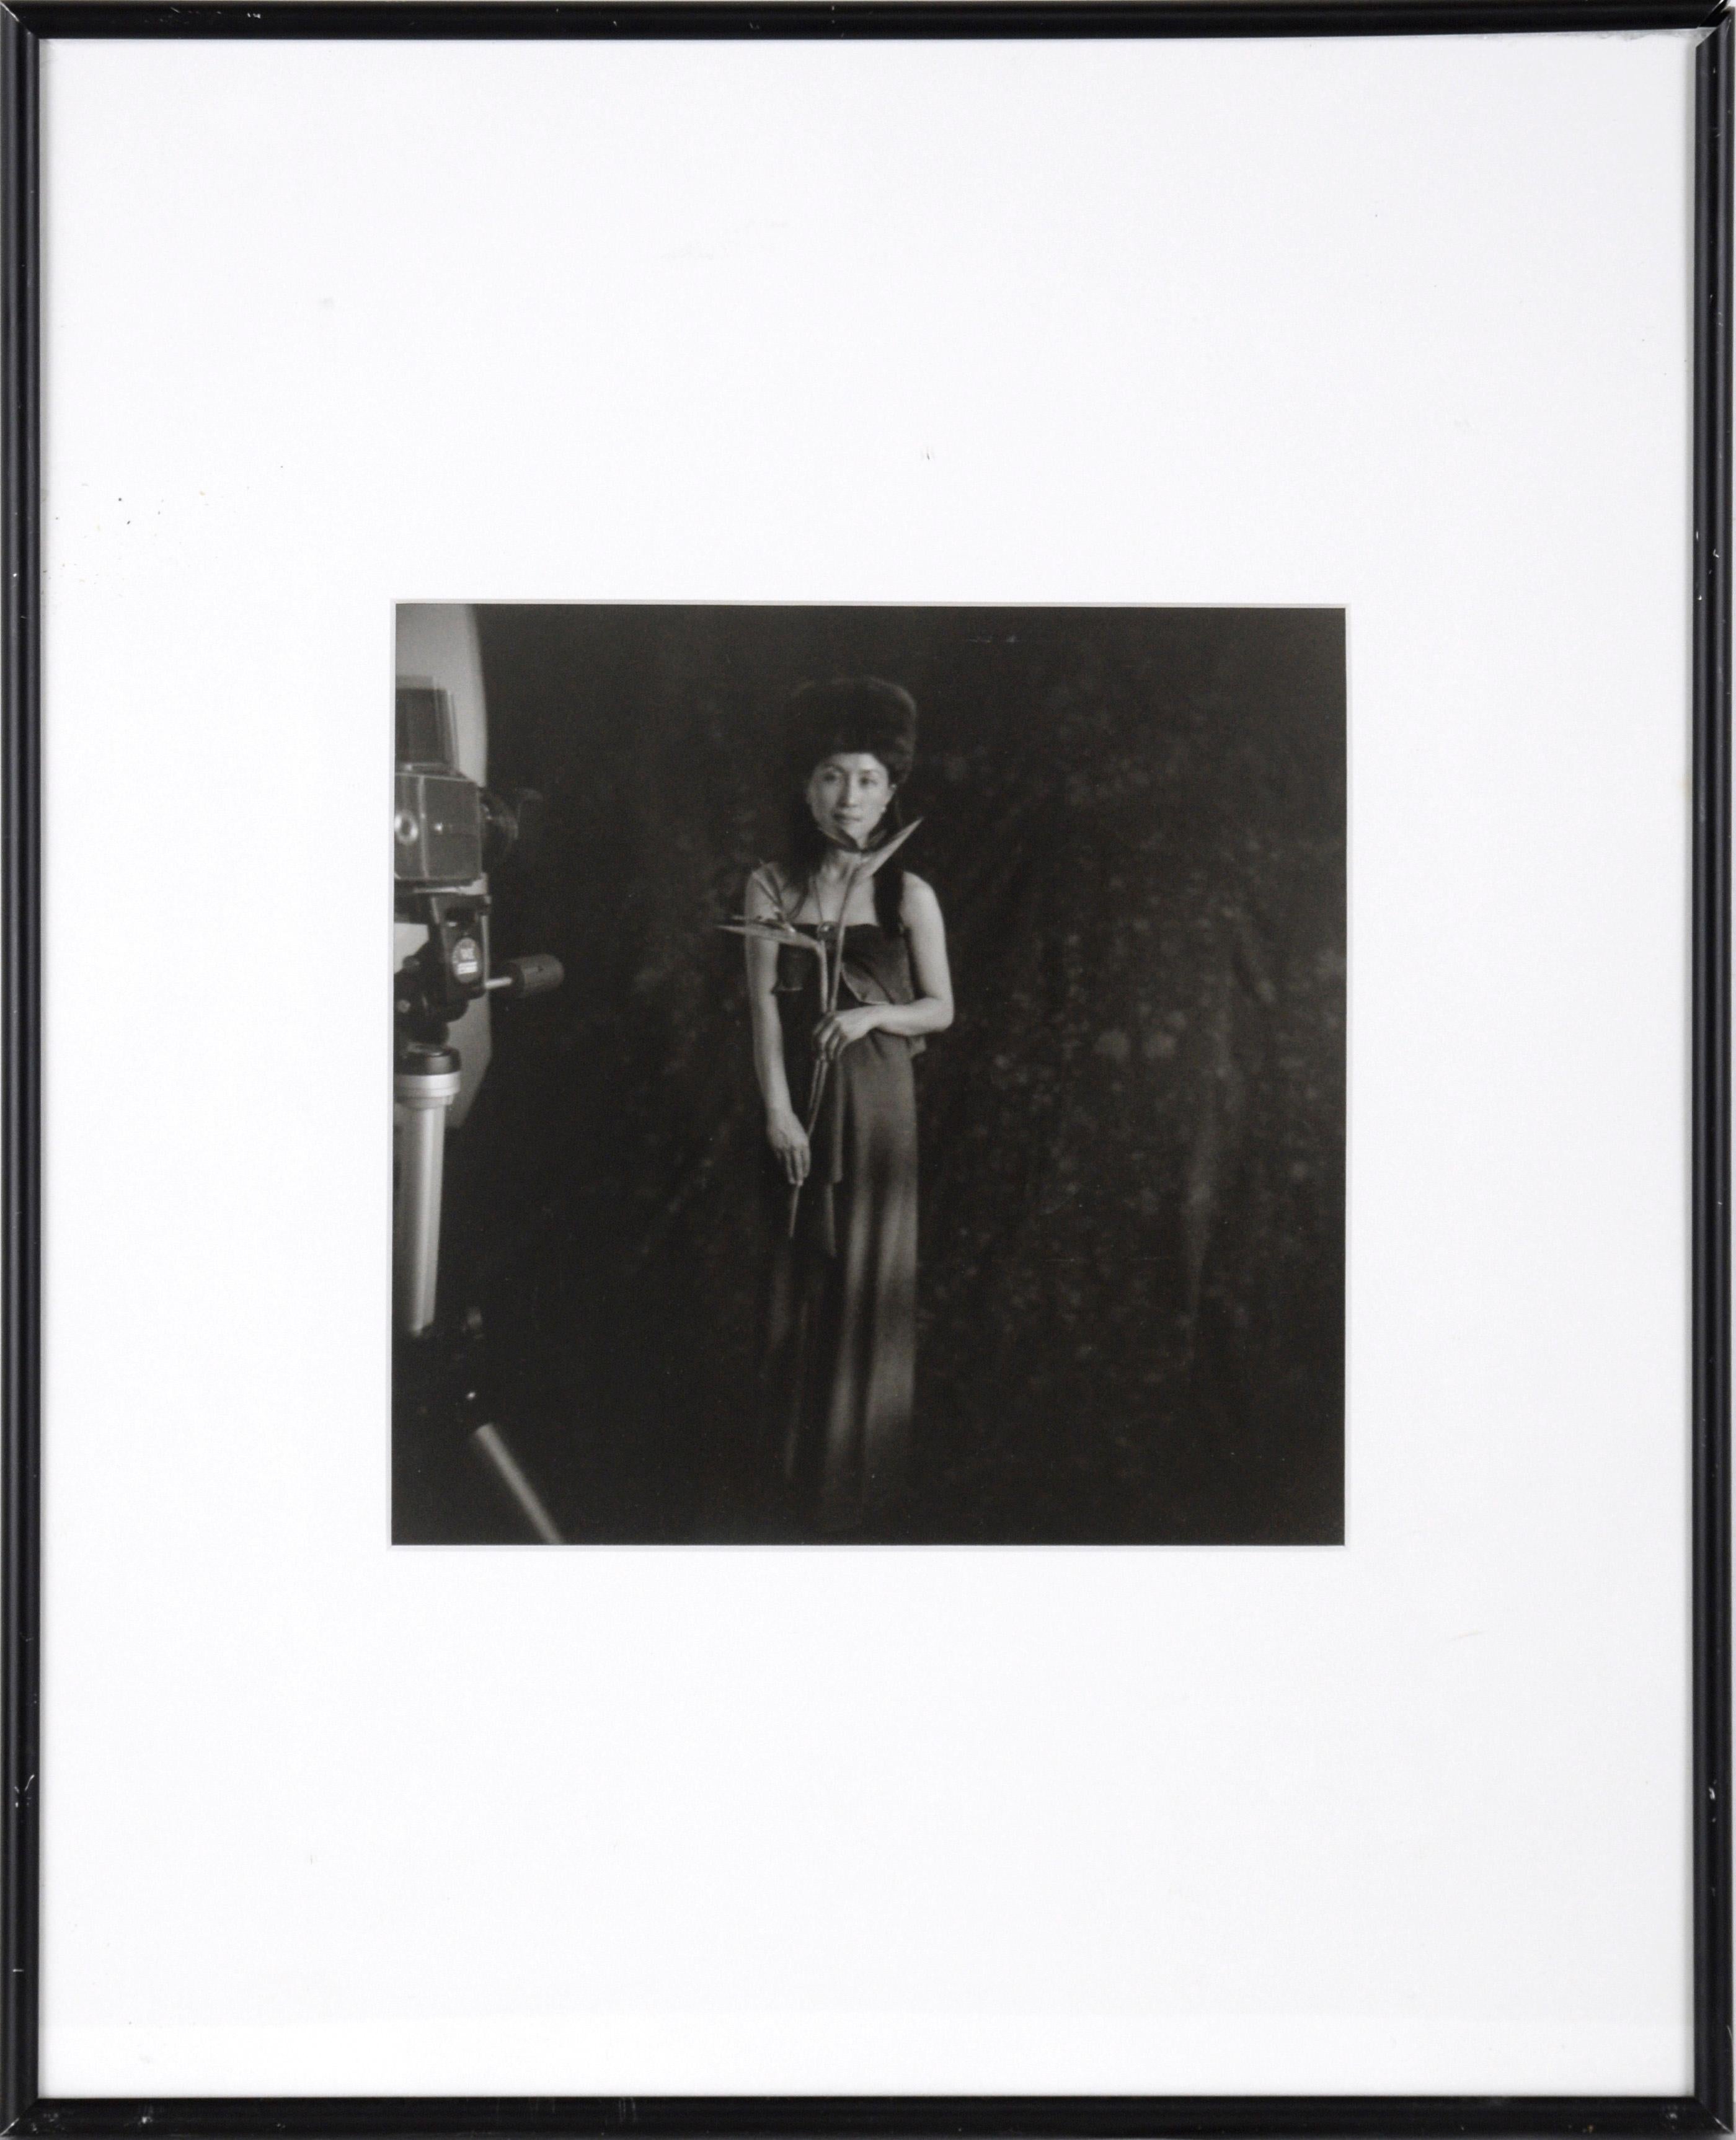 Dale Sprarage Portrait Photograph – „Porträt von MiKyoung mit Kamera“ – Silber-Gelatinefotografie